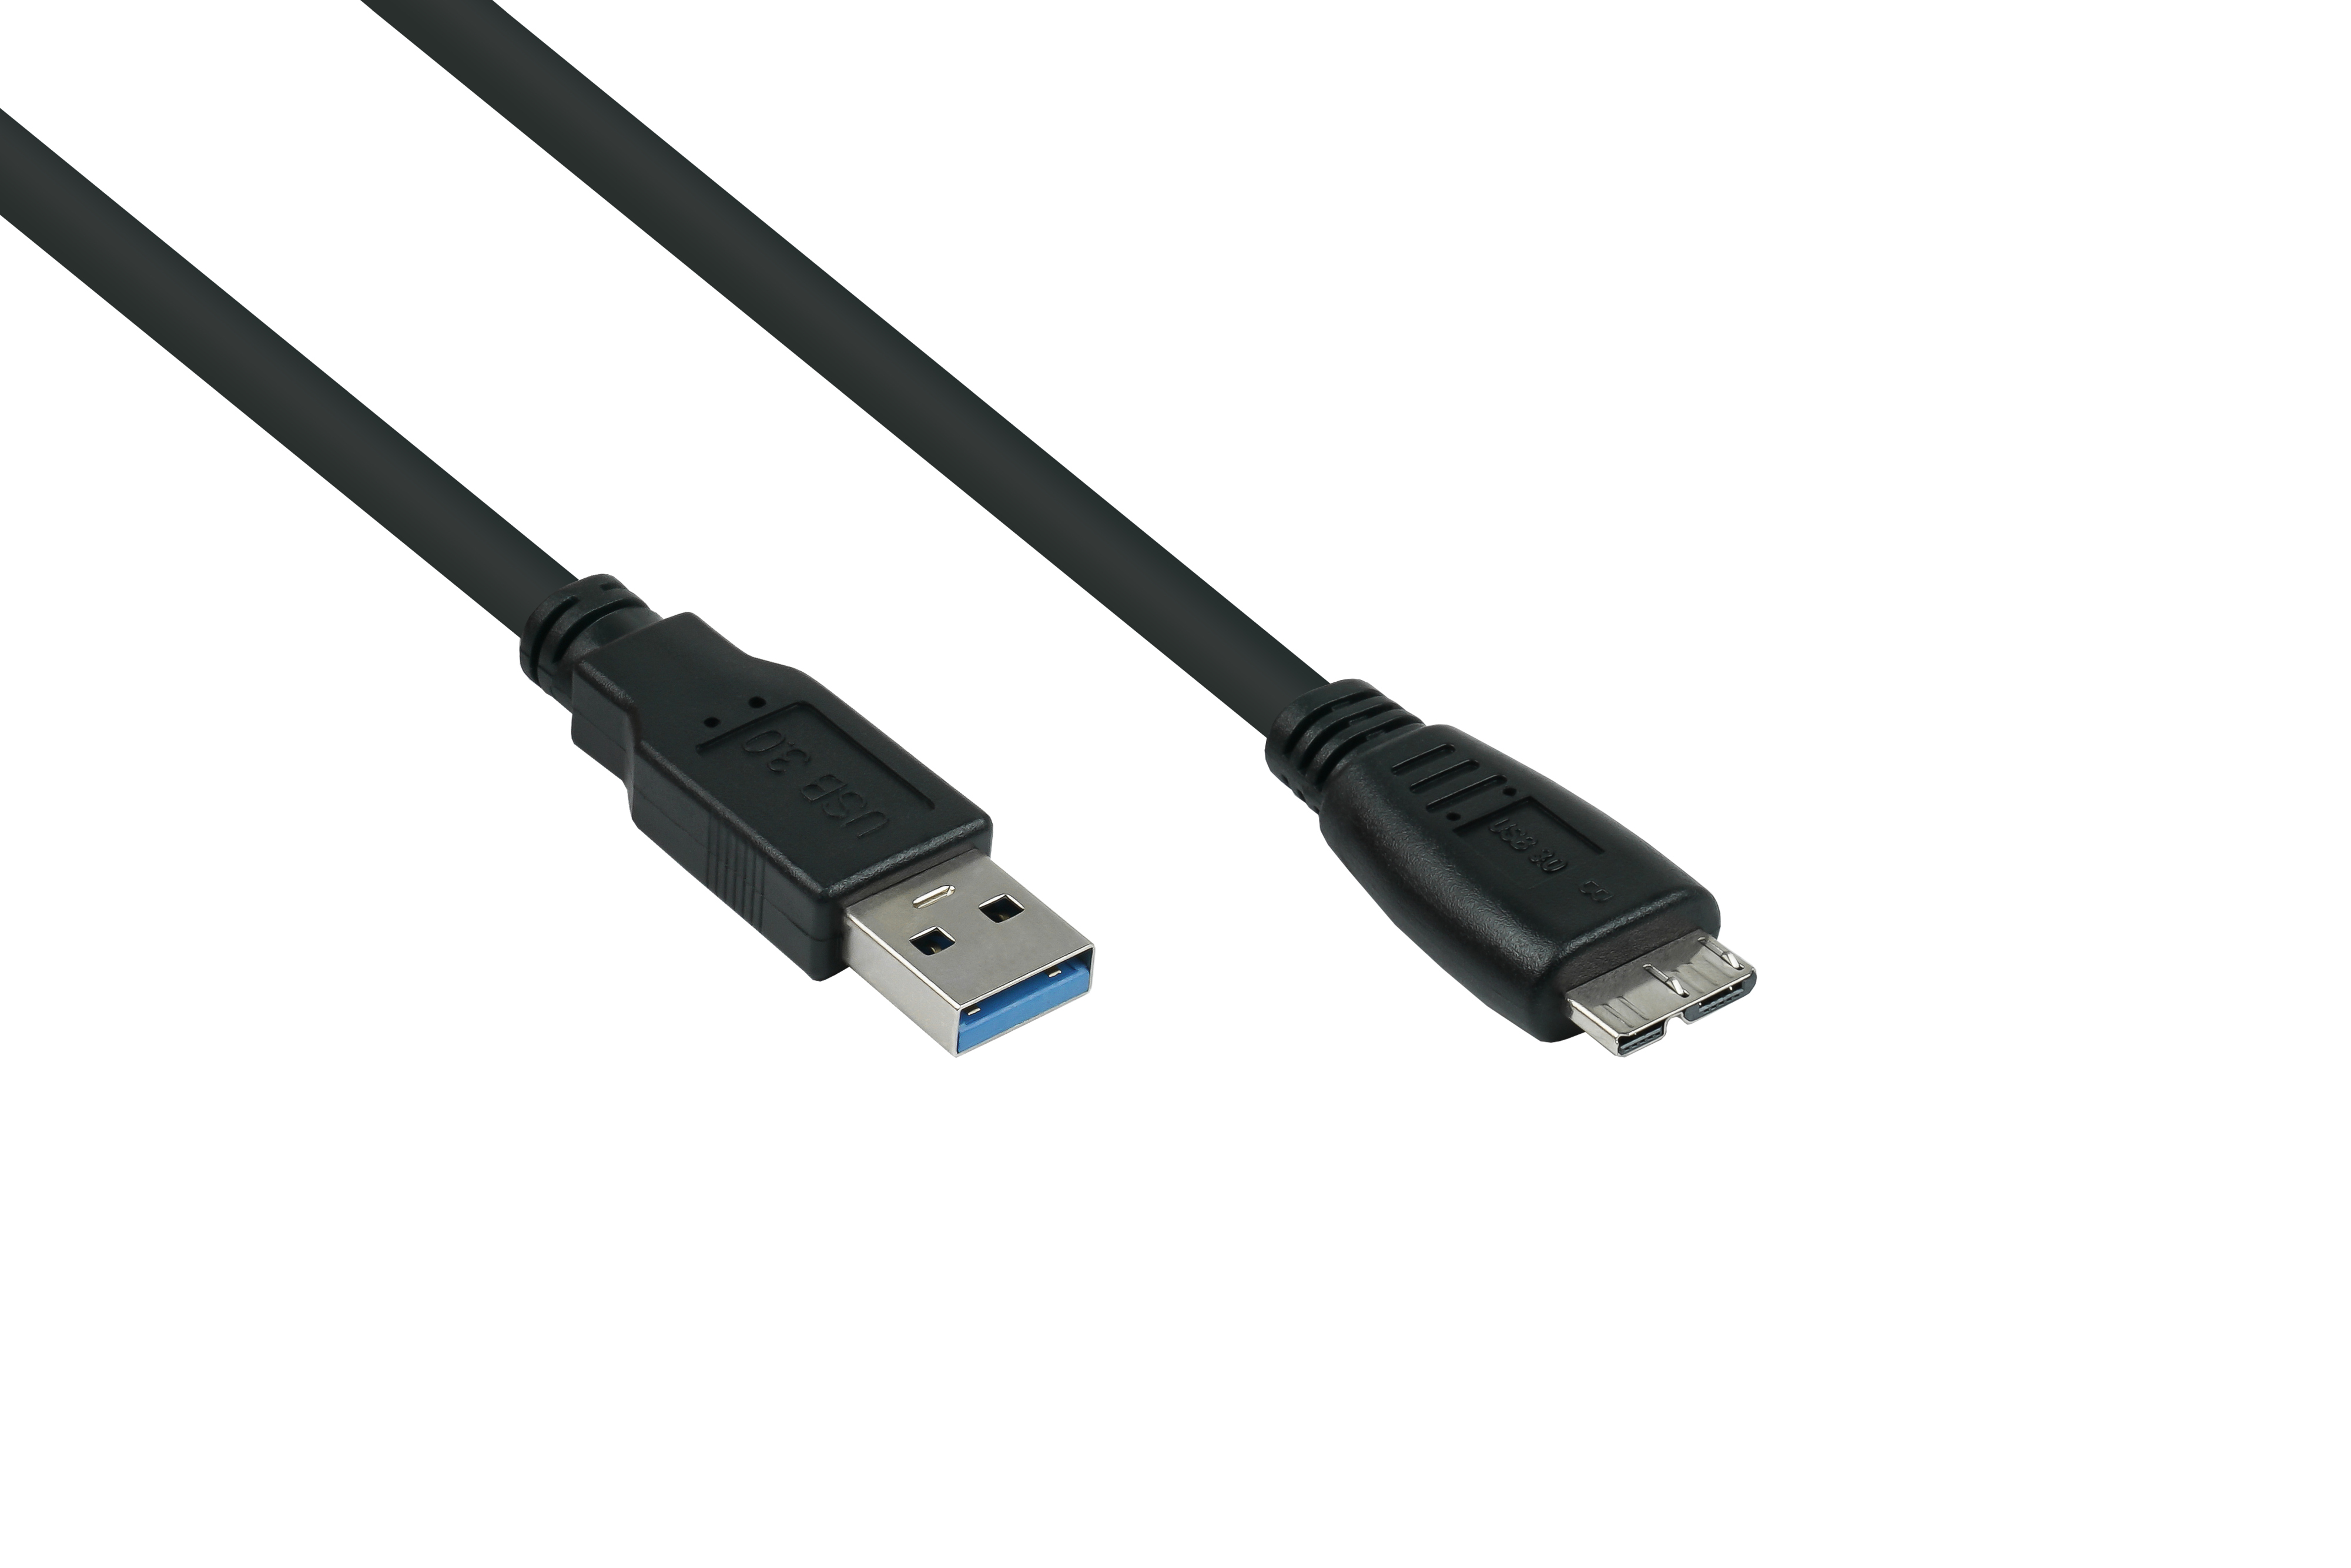 AWG24, 3.0 an Stecker A UL, AWG28 Kabel / KABELMEISTER Stecker B,Premium, USB schwarz KUPFER, Micro